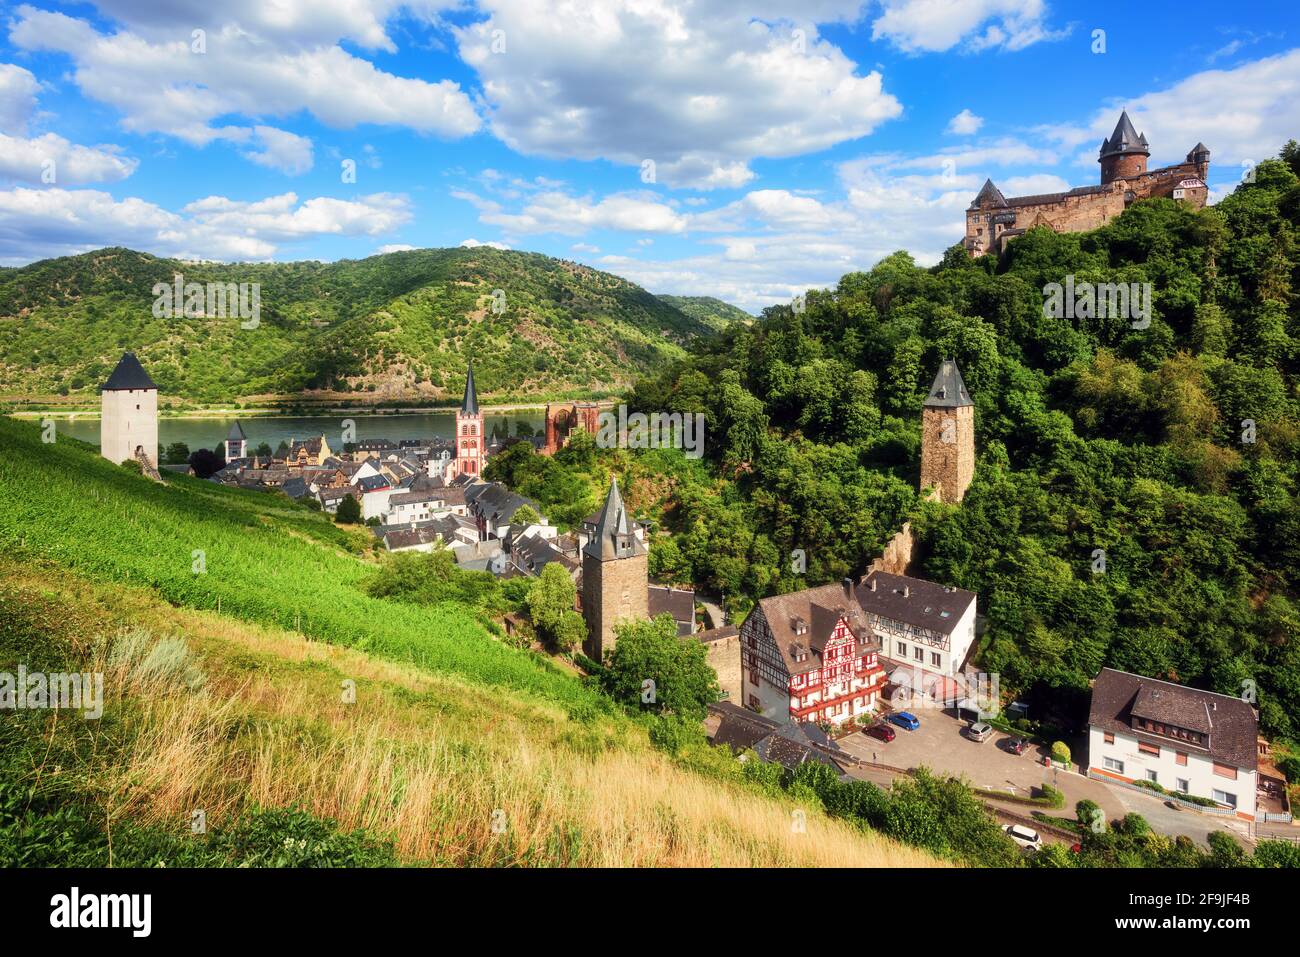 Bacharach am Rhein, Allemagne, célèbre pour ses vignobles, ses tours médiévales et son château et son emplacement romantique dans une vallée du Rhin Banque D'Images